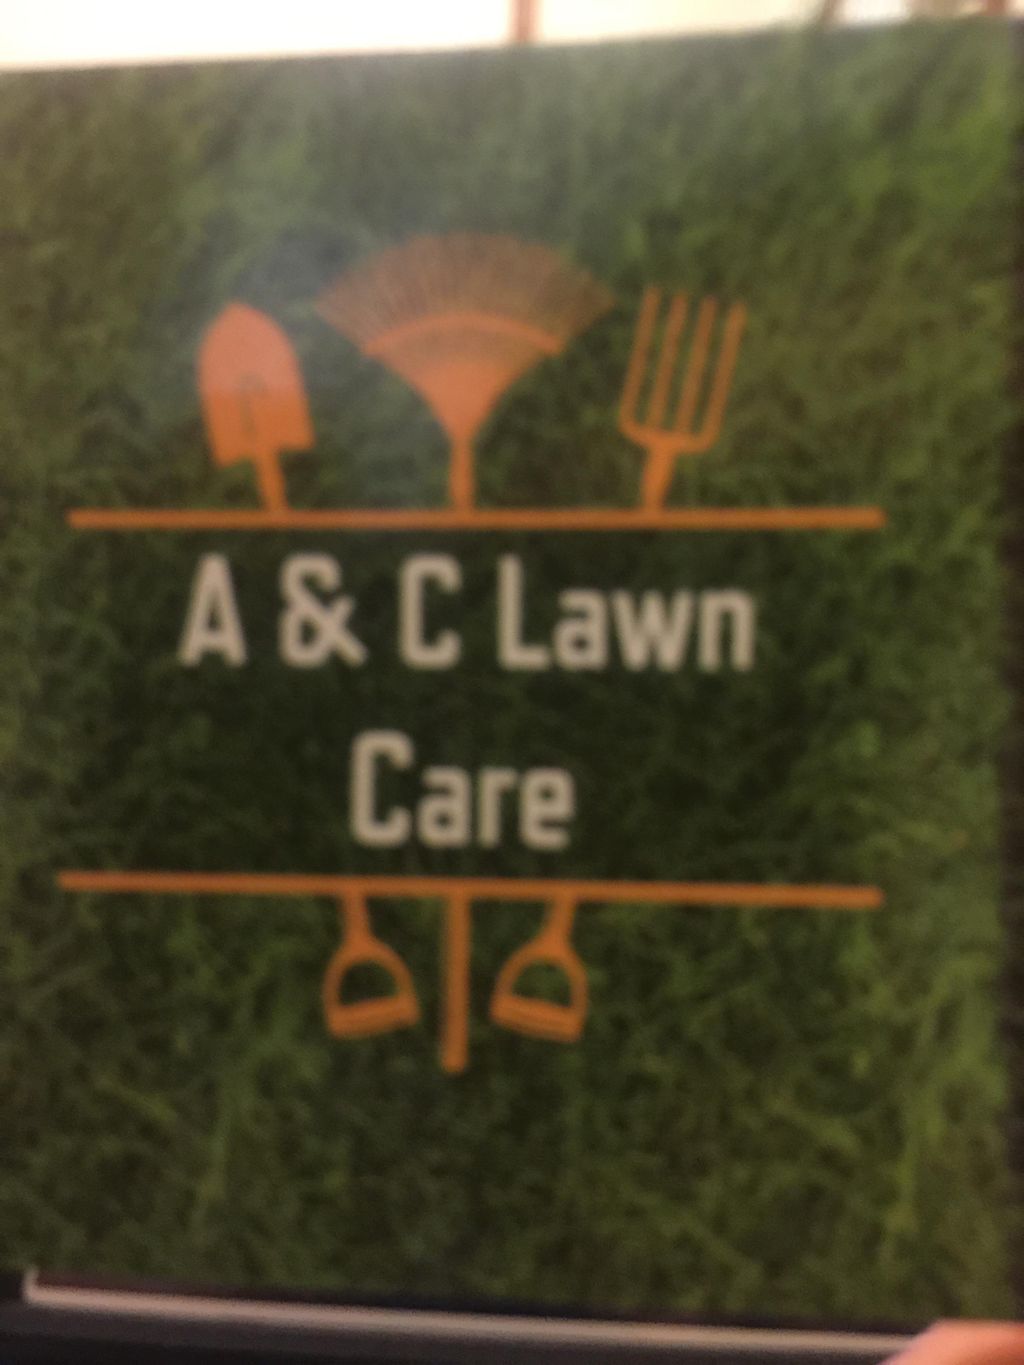 A& C lawn care